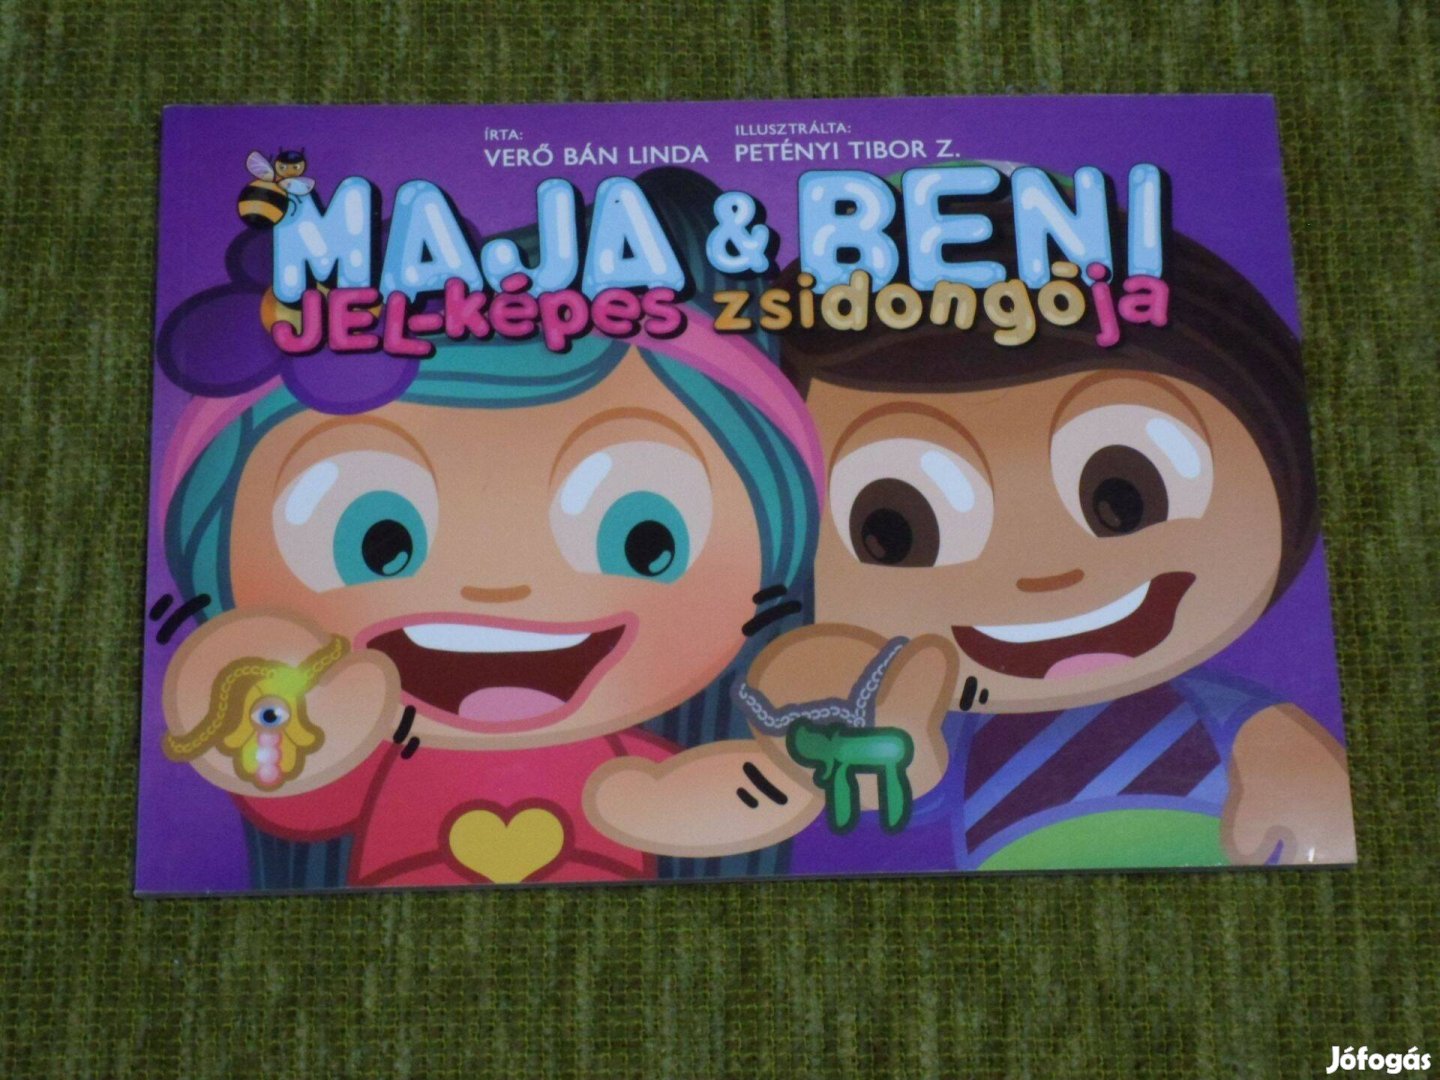 Verő Bán Linda: Maja & Beni jel-képes zsidongója